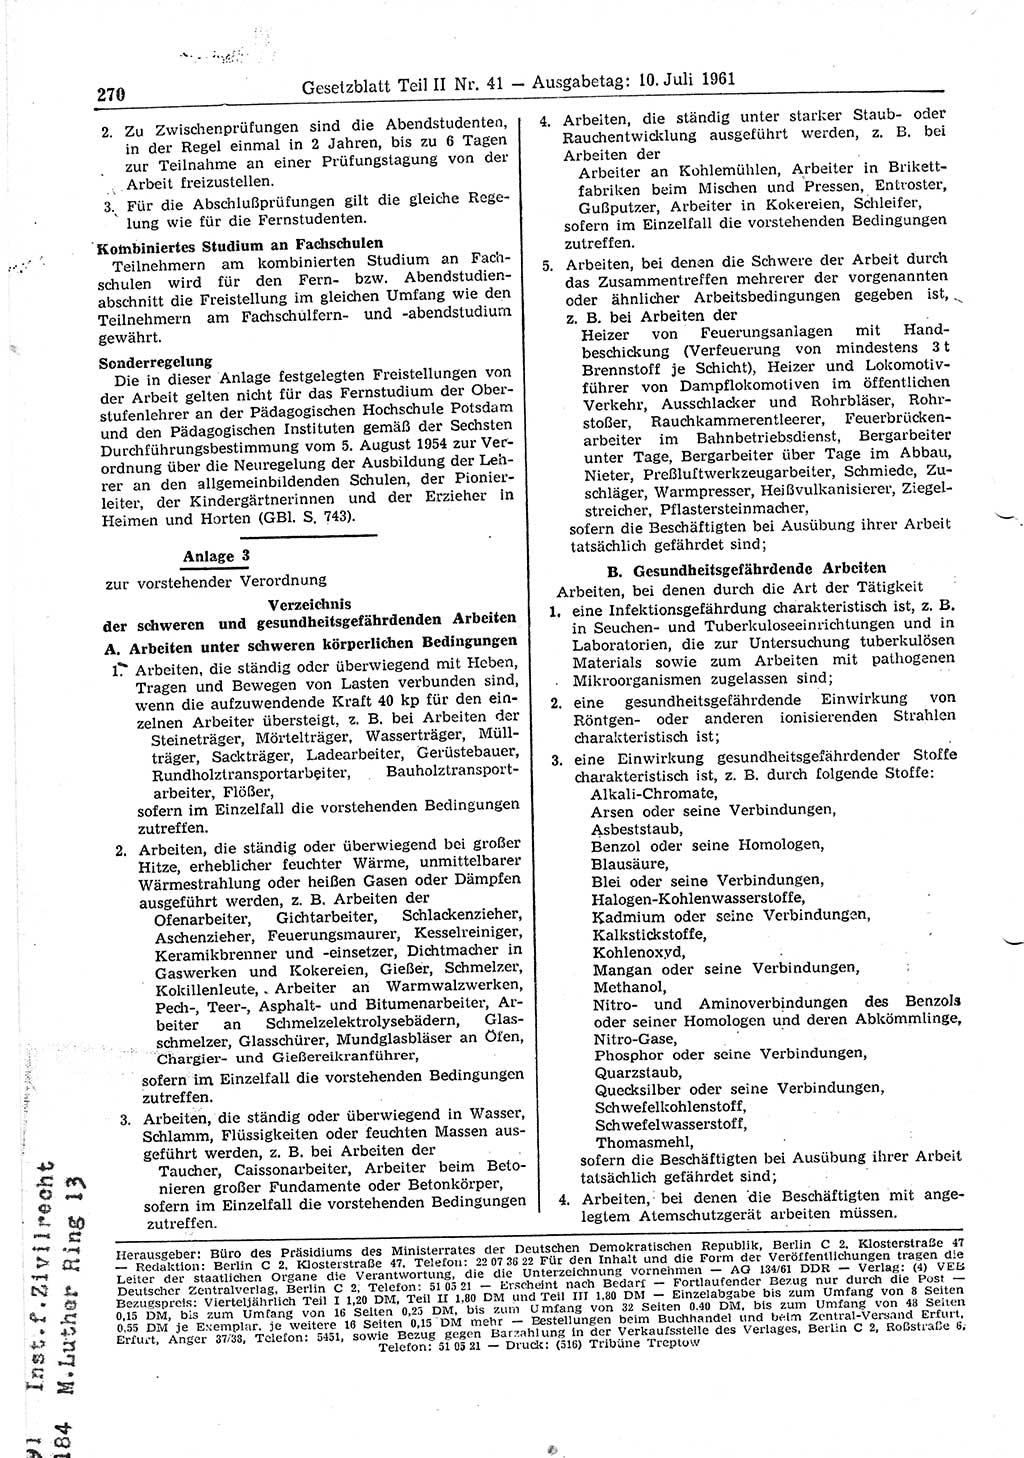 Gesetzblatt (GBl.) der Deutschen Demokratischen Republik (DDR) Teil ⅠⅠ 1961, Seite 270 (GBl. DDR ⅠⅠ 1961, S. 270)